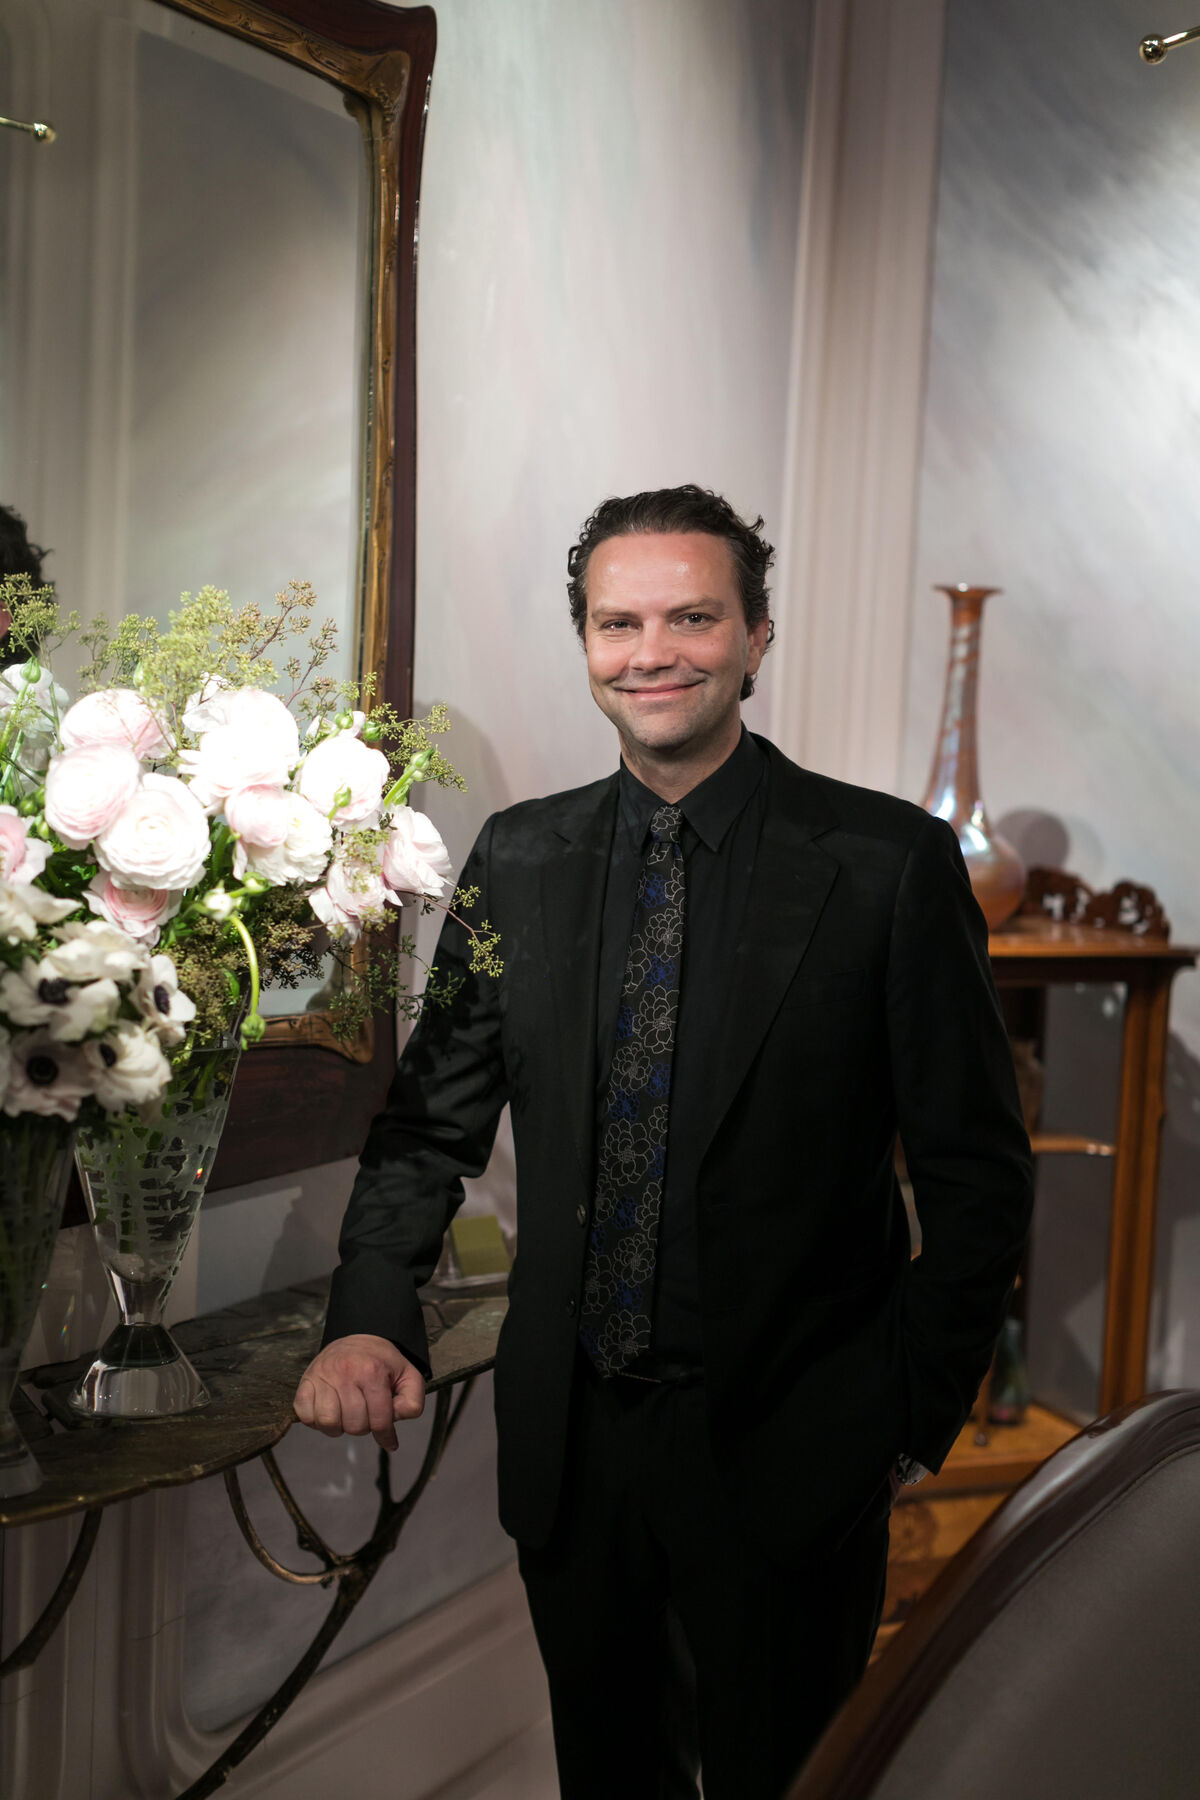 Remco van Vliet, the Florist Who the Met's Hall with -